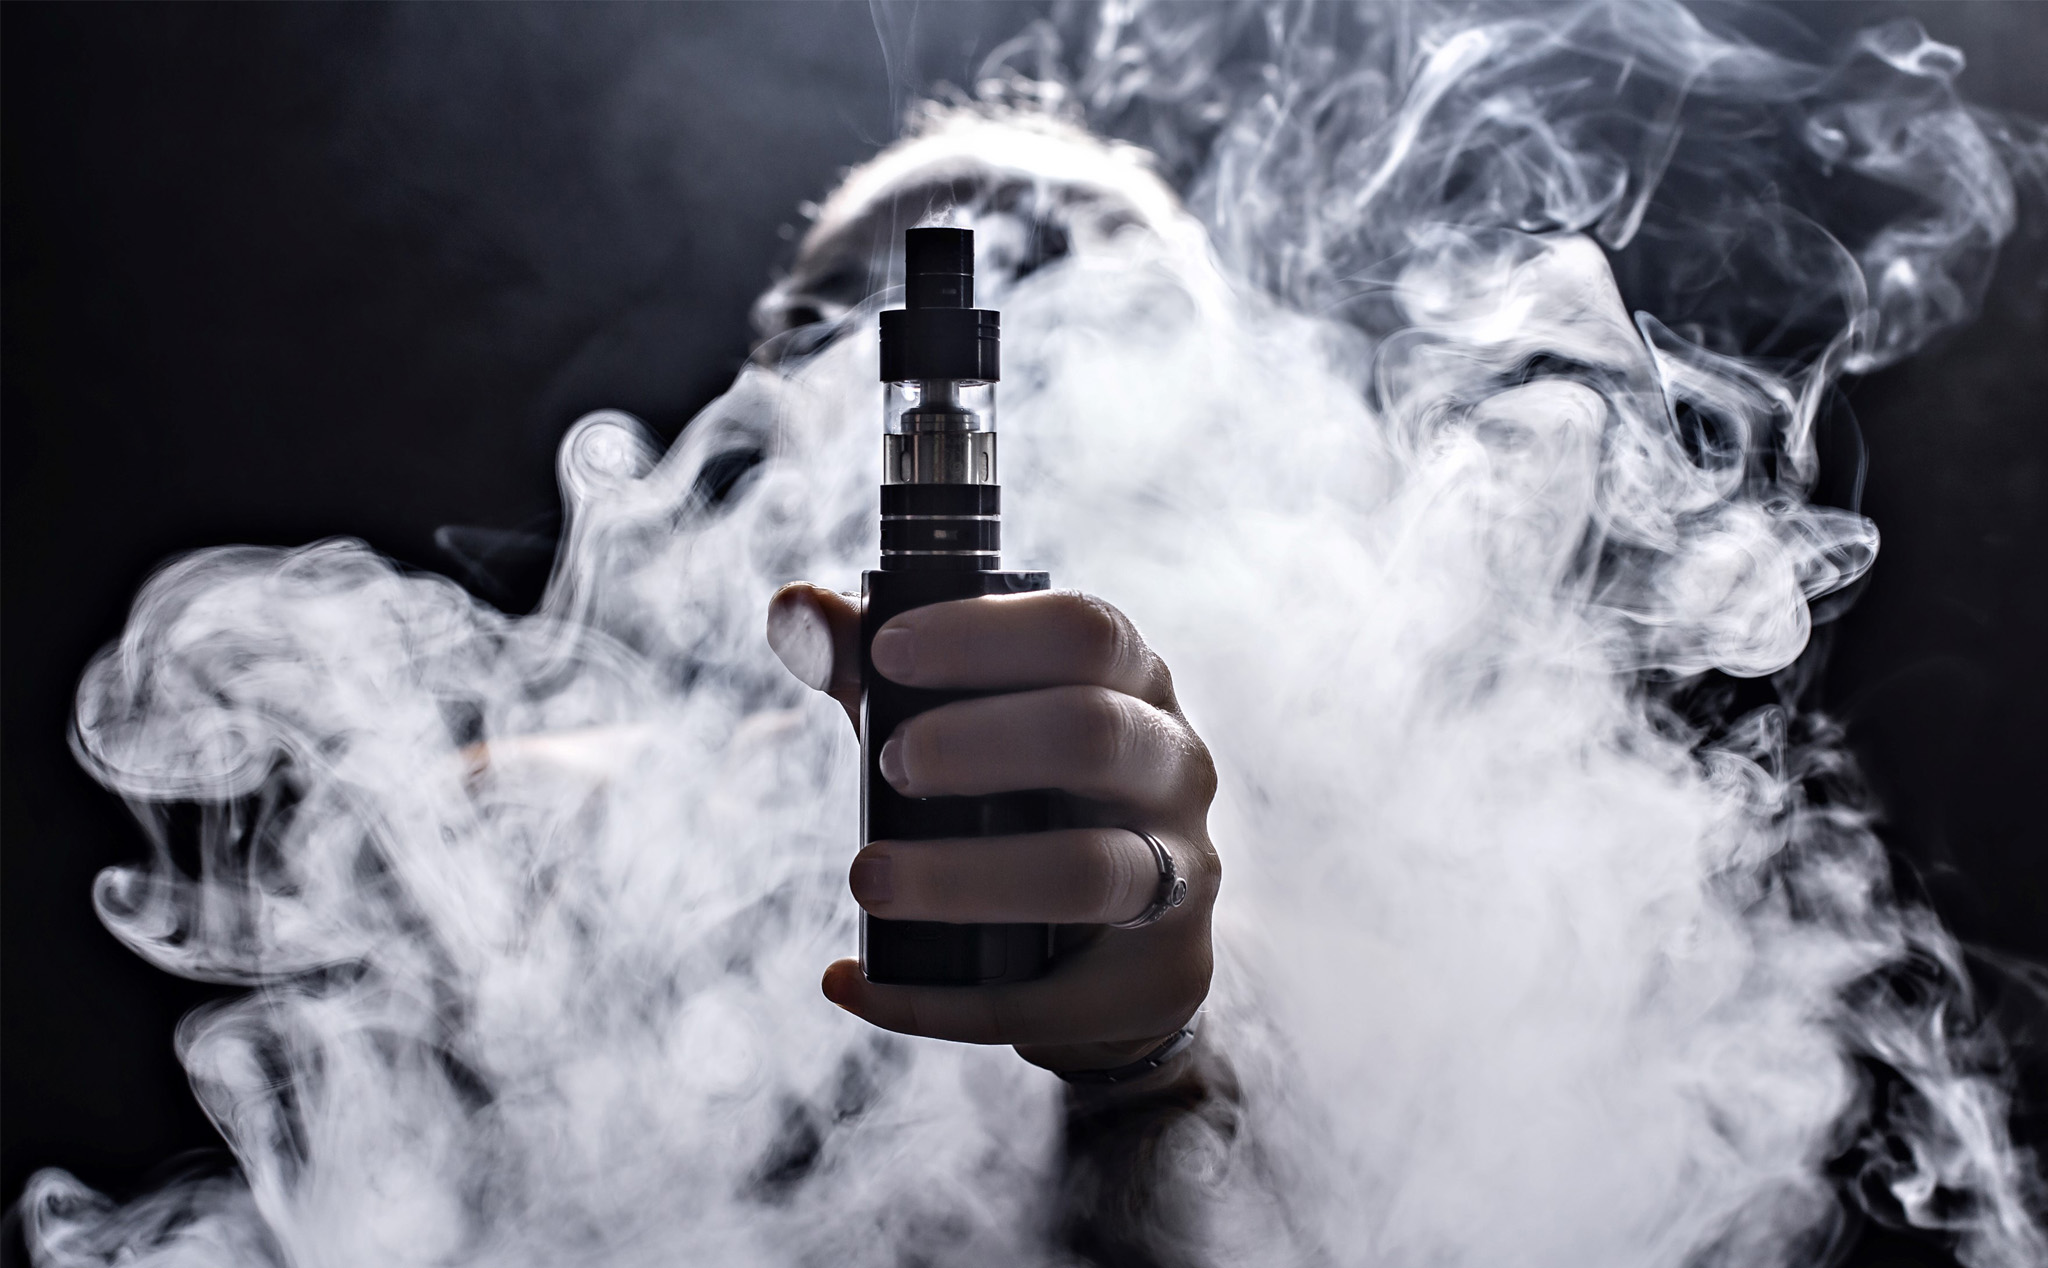 Ủy viên FDA: Nếu tỷ lệ sử dụng thuốc lá điện tử trong giới trẻ không giảm, nó sẽ bị cấm